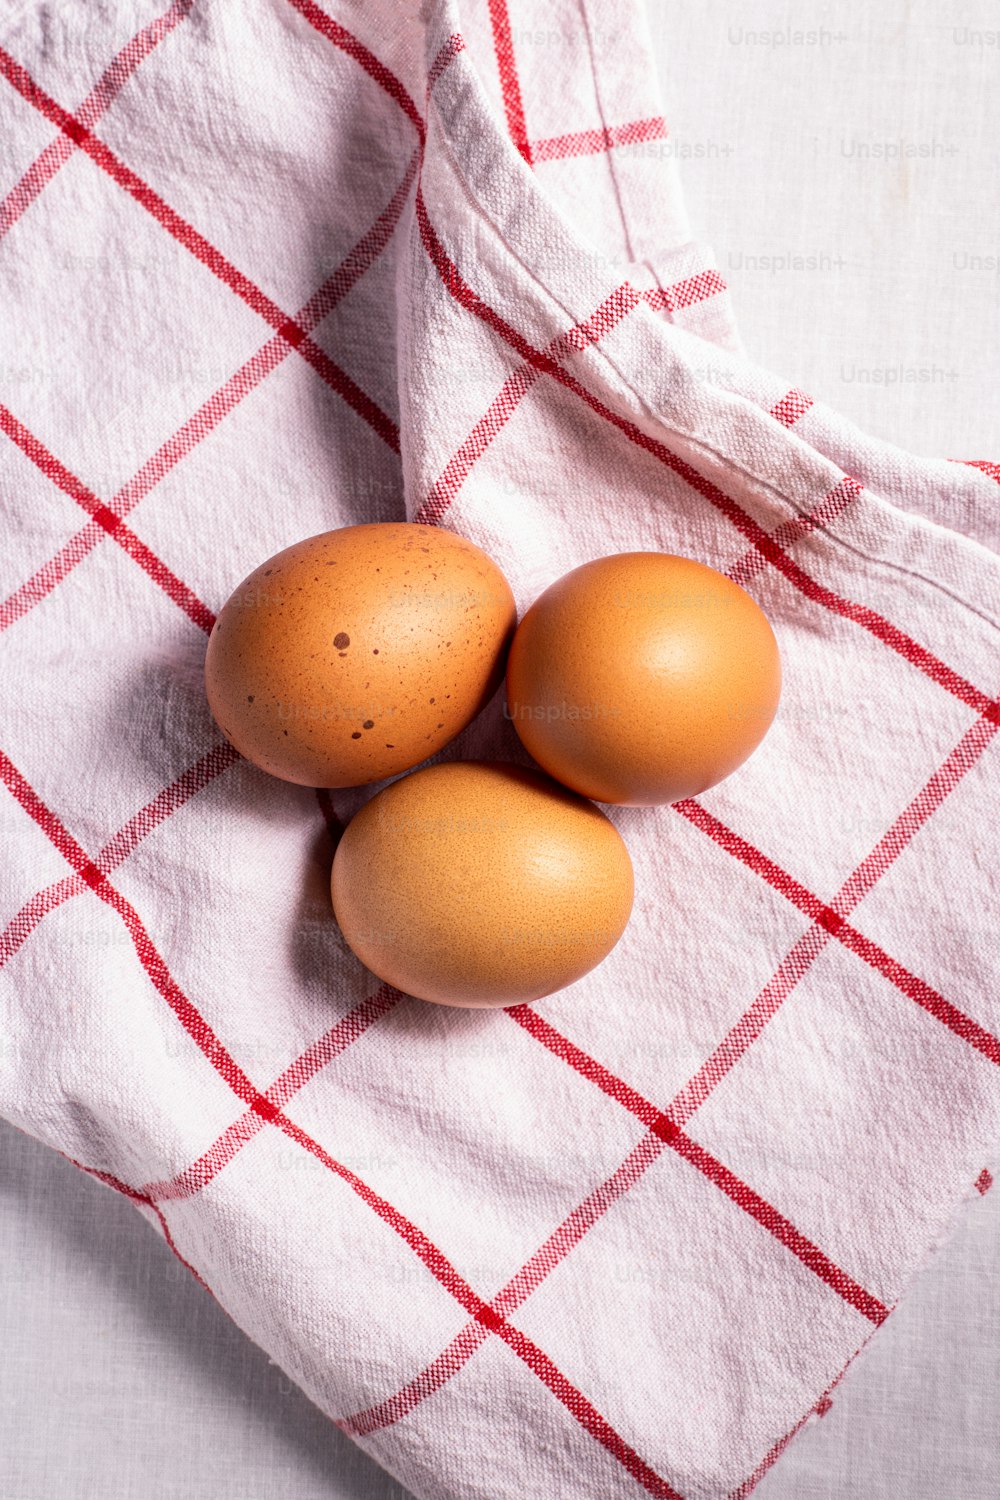 drei braune Eier auf einem rot-weiß karierten Handtuch